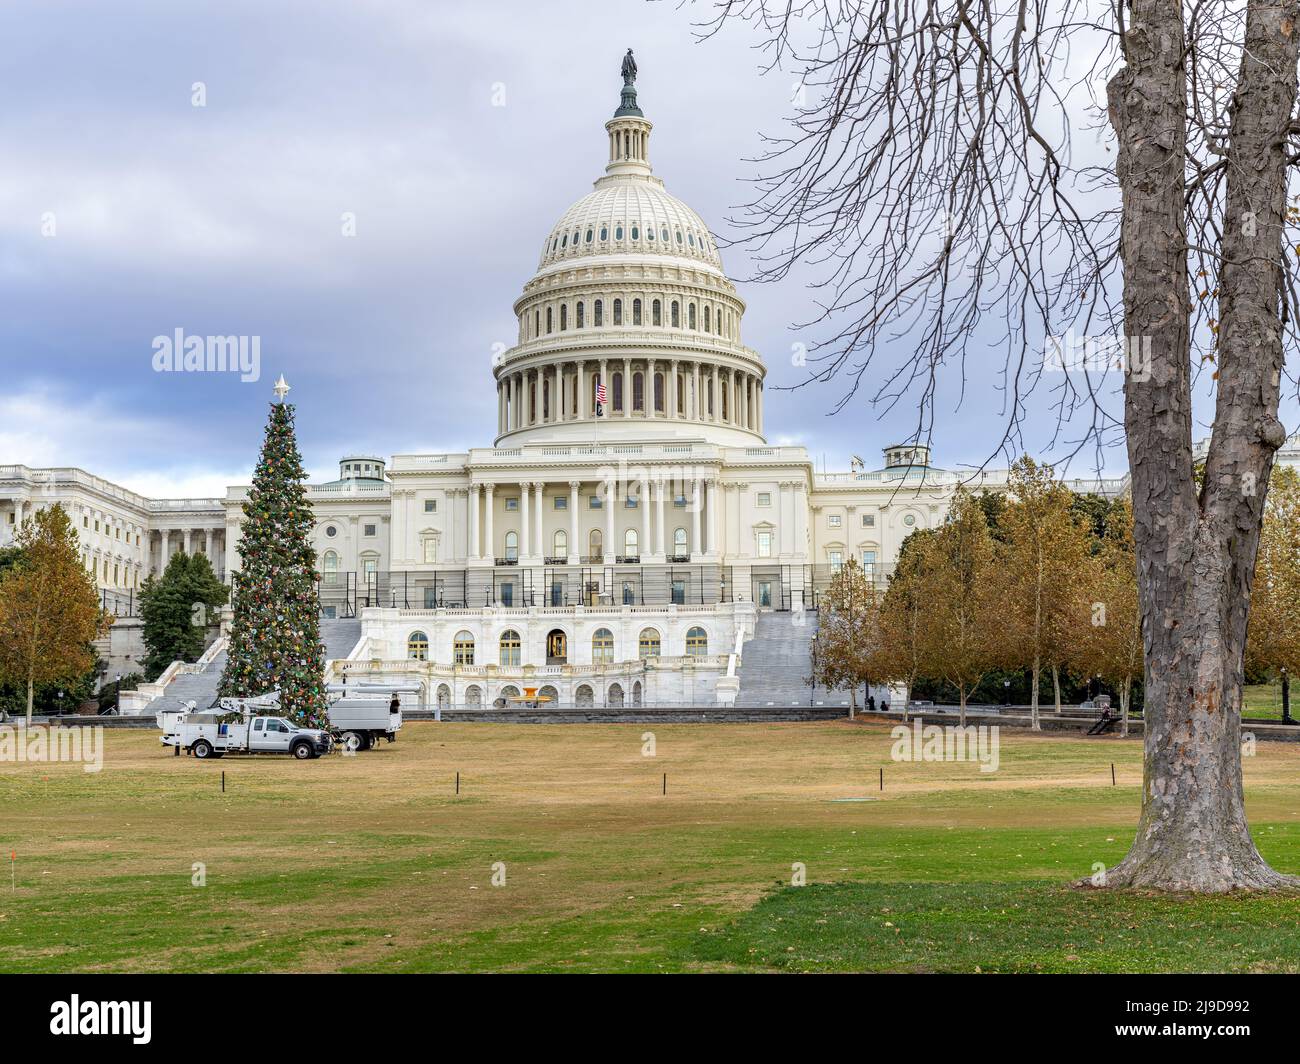 Edificio de la capital en Washington DC con árbol de Navidad que se está estableciendo Foto de stock